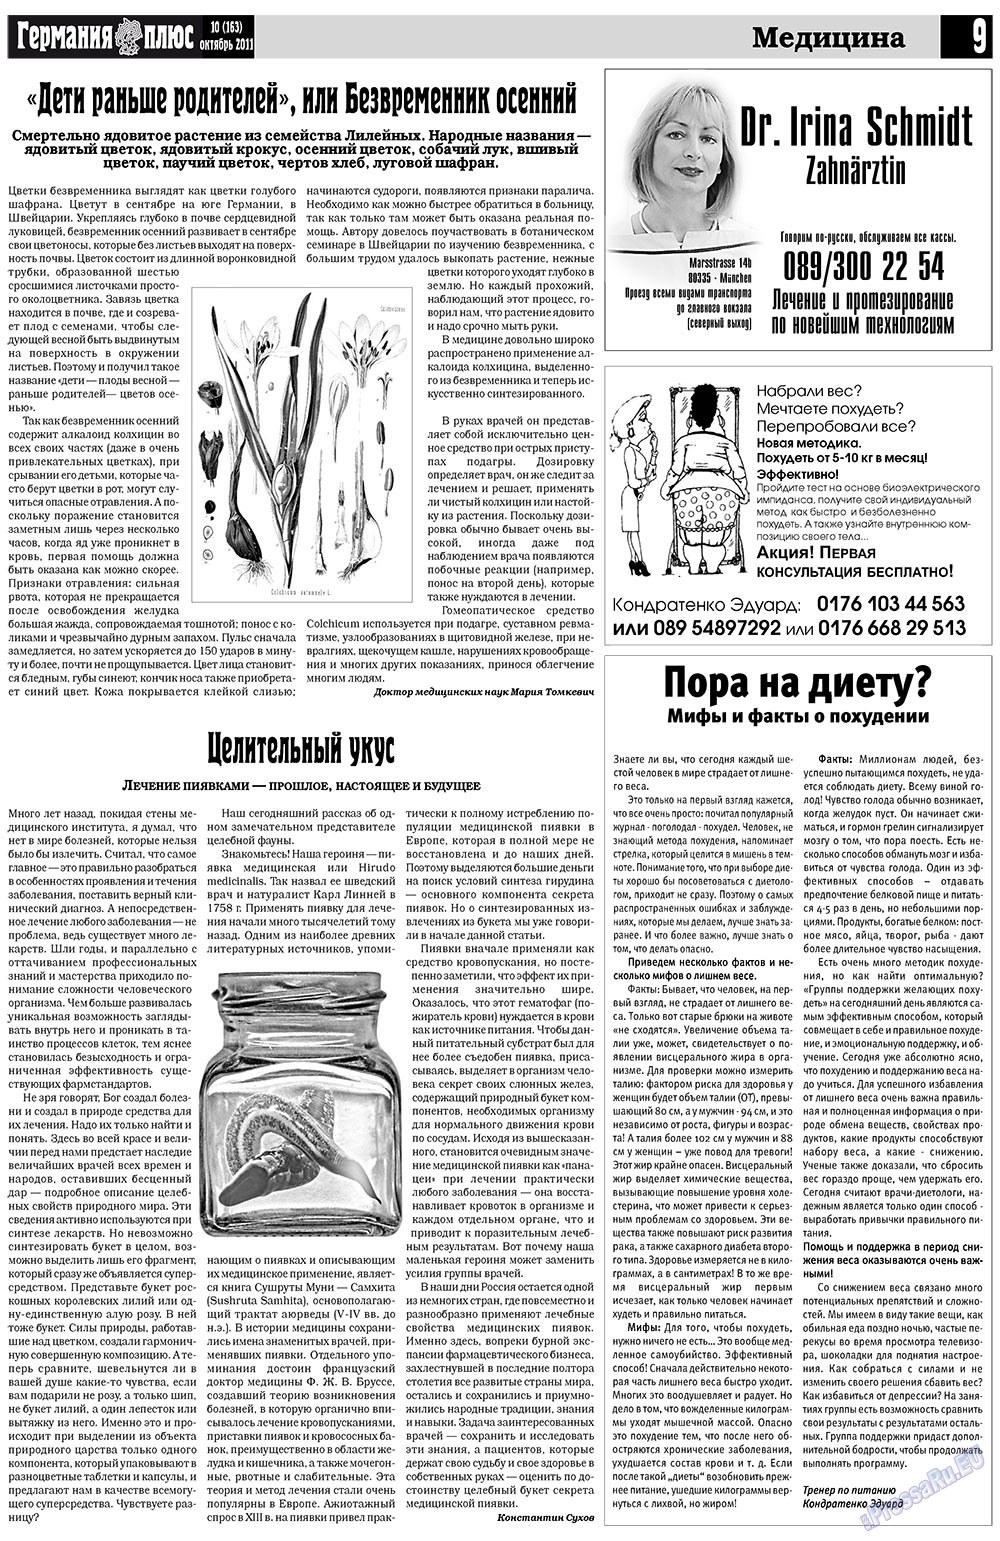 Германия плюс (газета). 2011 год, номер 10, стр. 9